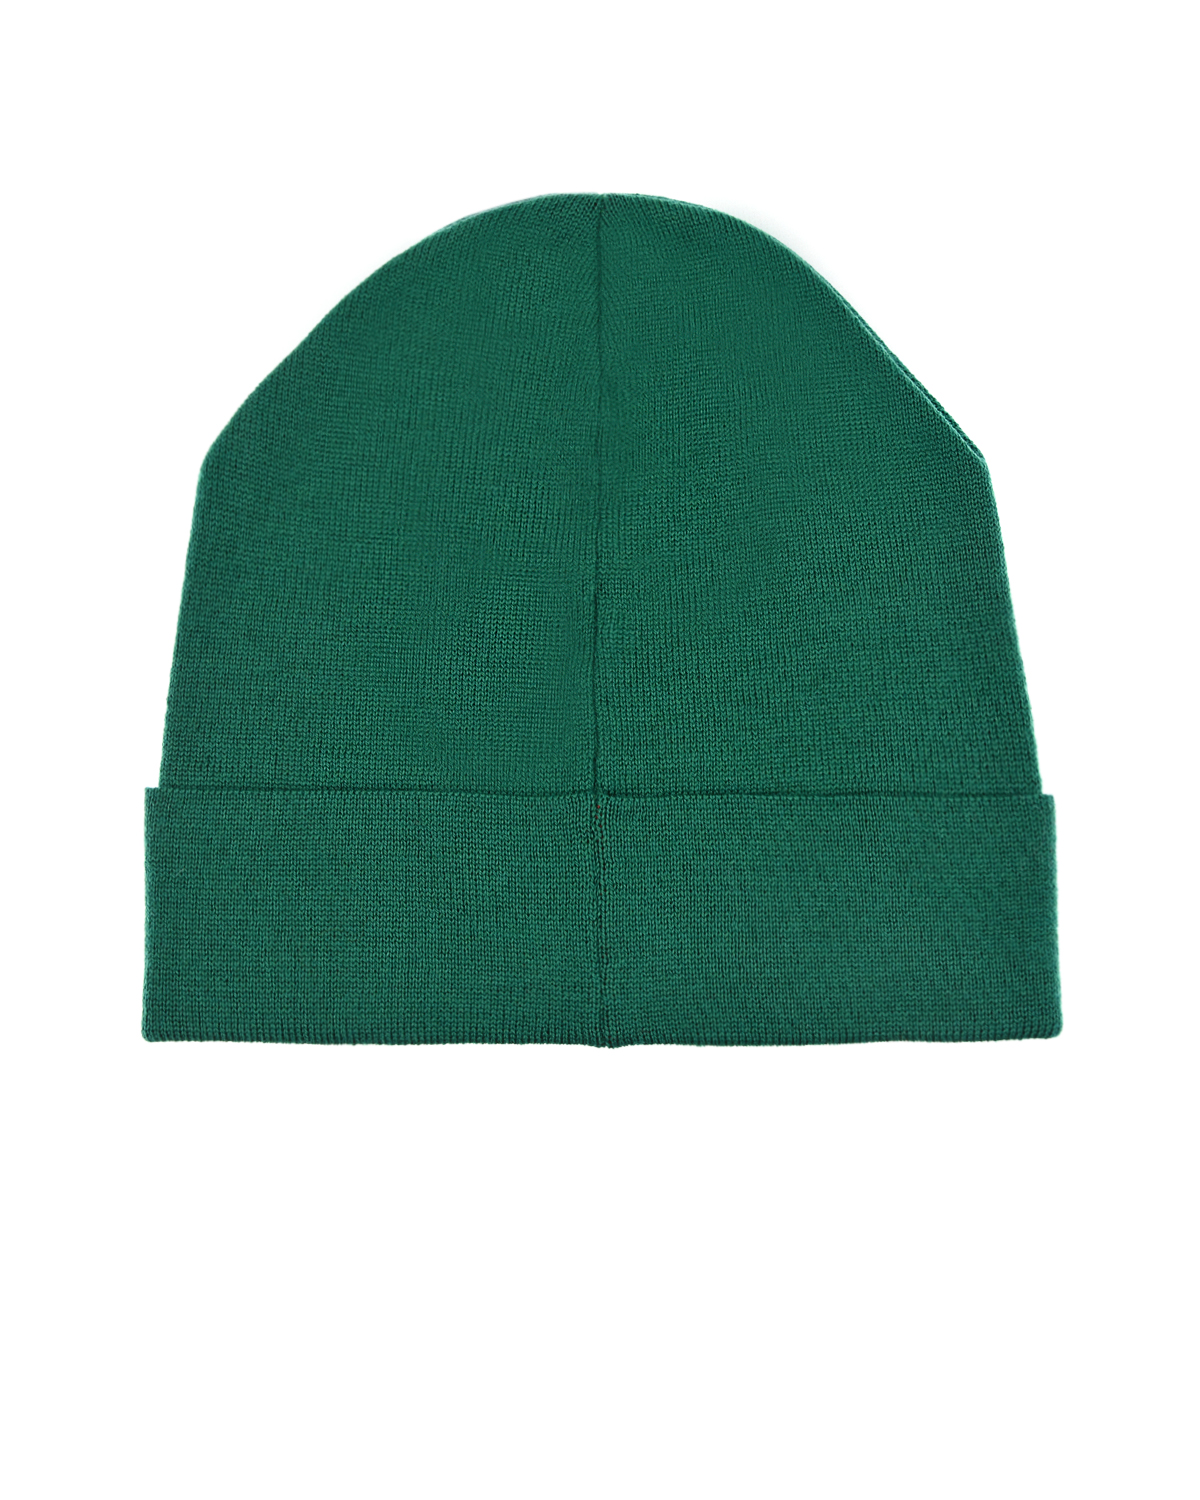 Зеленая шапка с надписью "Rock" Catya детская, размер 55, цвет зеленый - фото 2